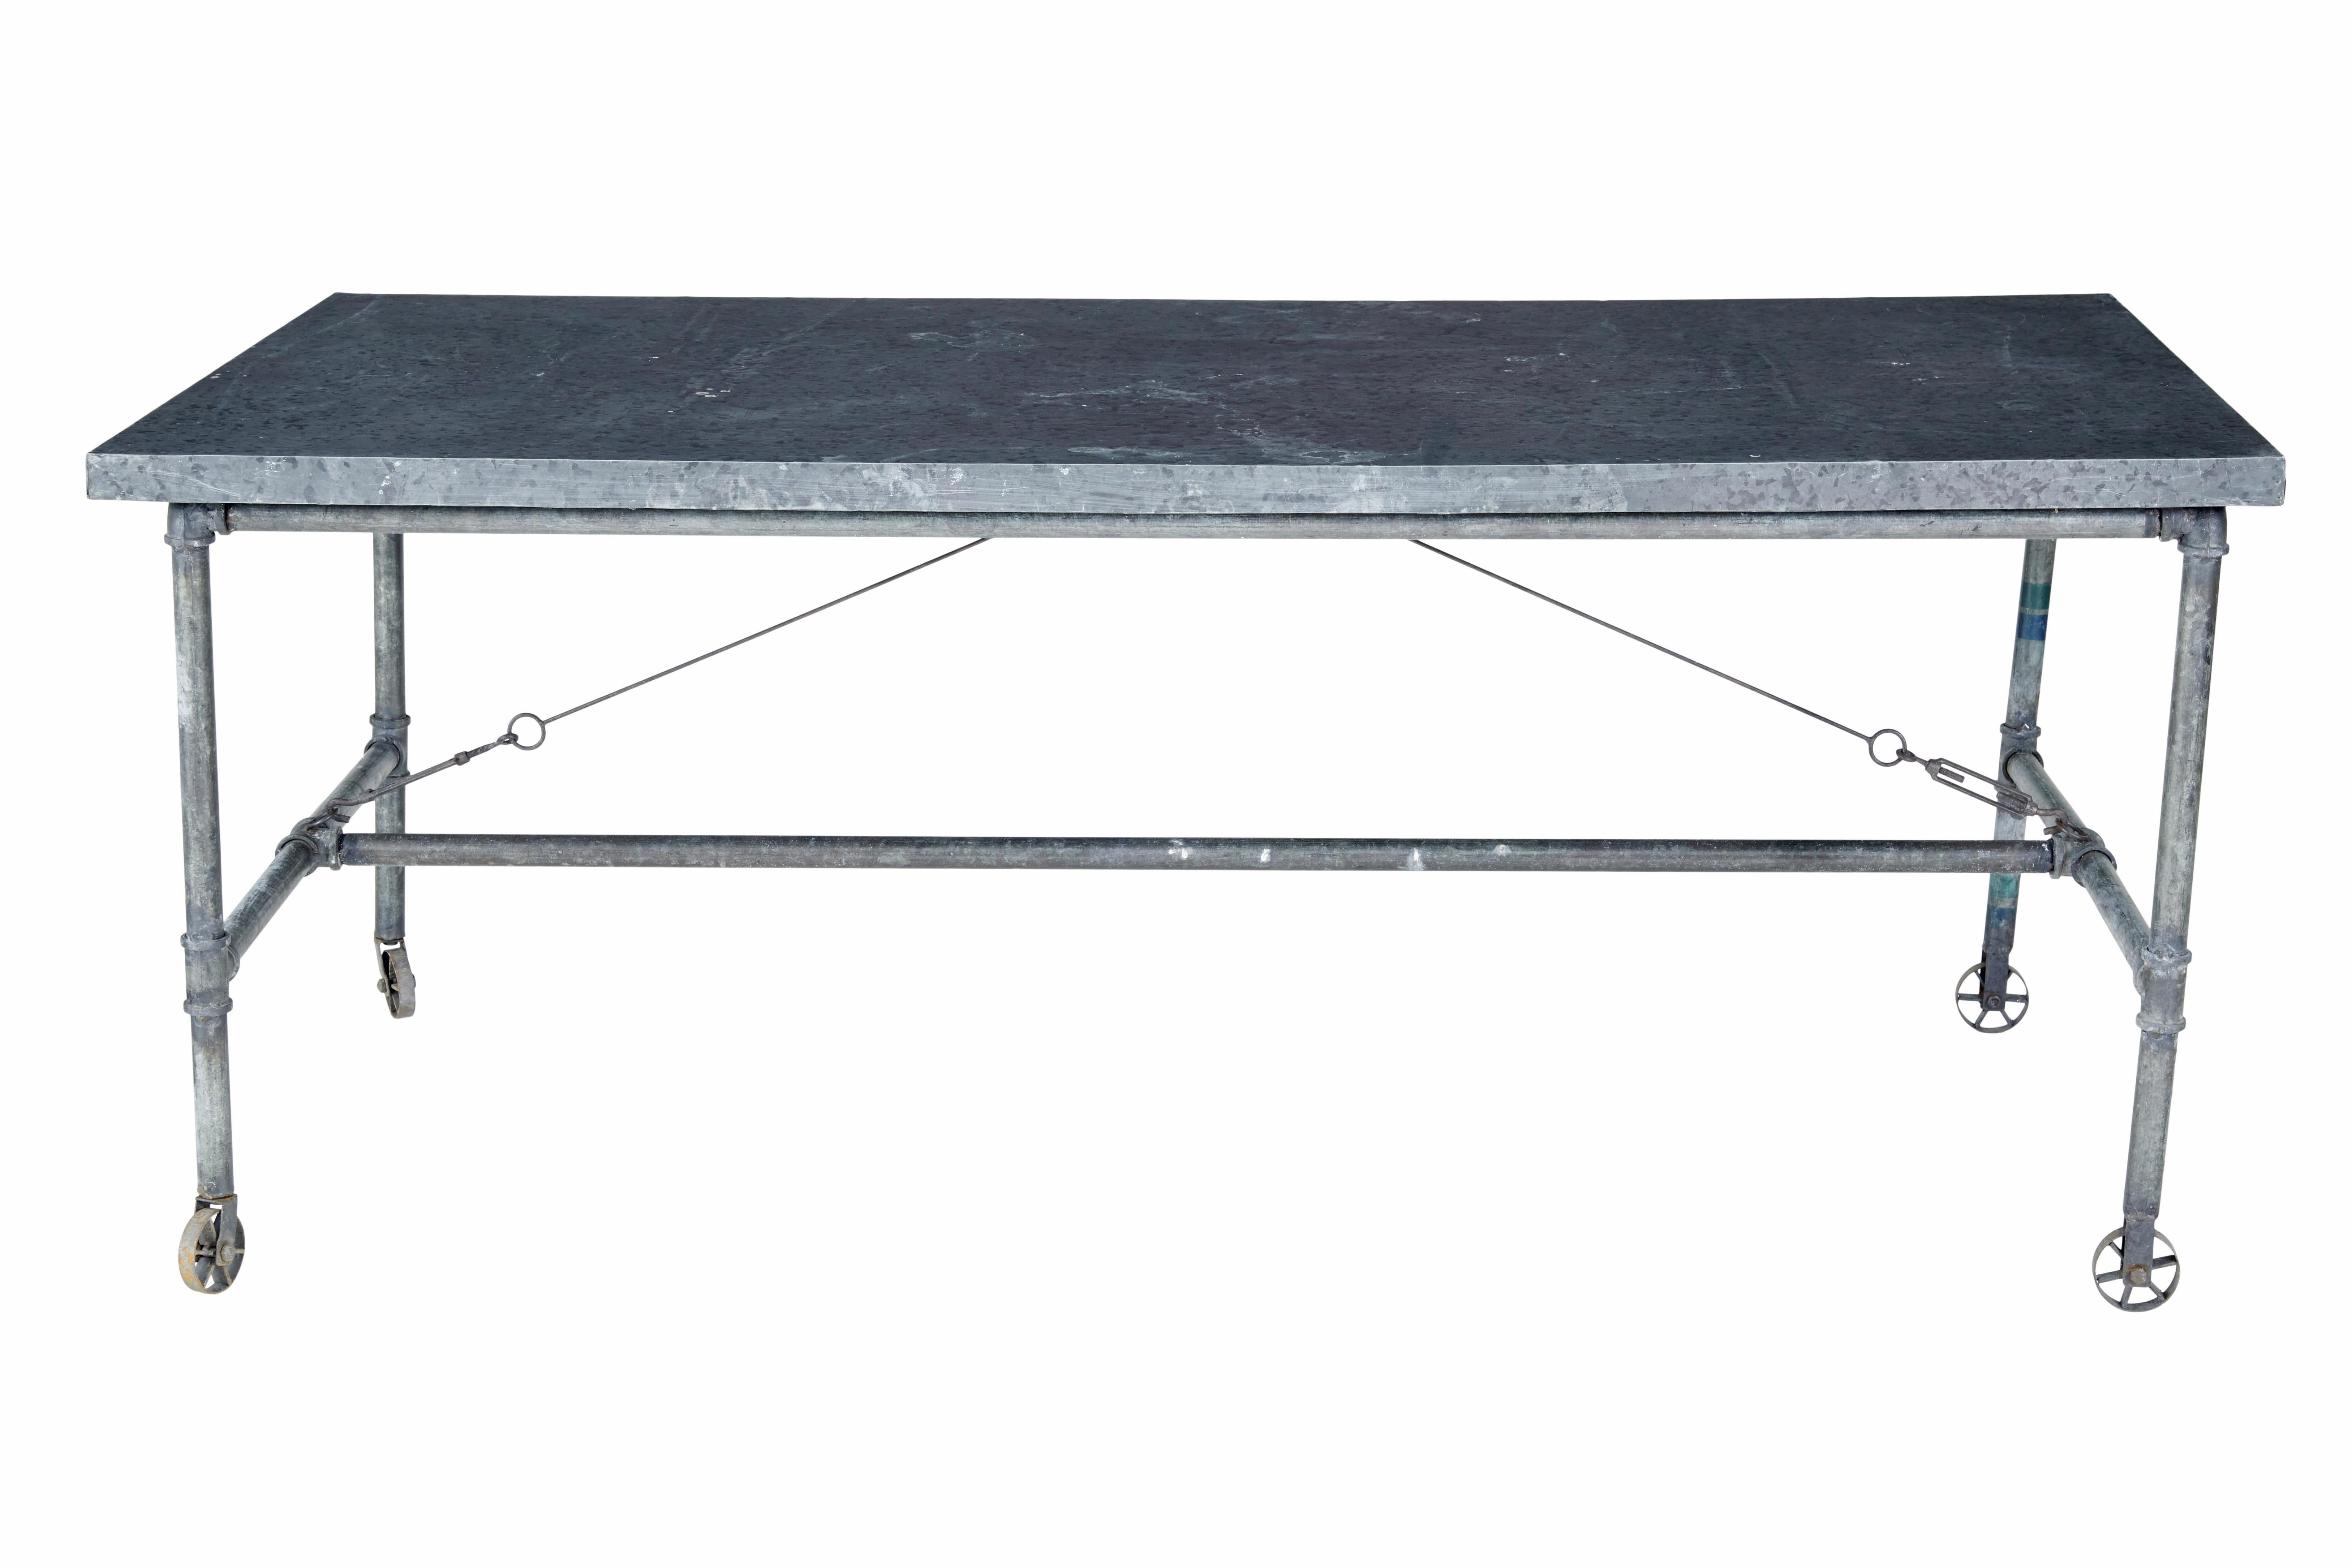 Industrieller Tisch aus recyceltem Metall aus dem frühen 20. Jahrhundert, um 1930.

Industriell gefertigter Arbeitstisch aus einem Rohrrahmen, der von Bahren getragen wird.  Ausgestattet mit festen Rädern an einem Ende und drehbaren Rädern am